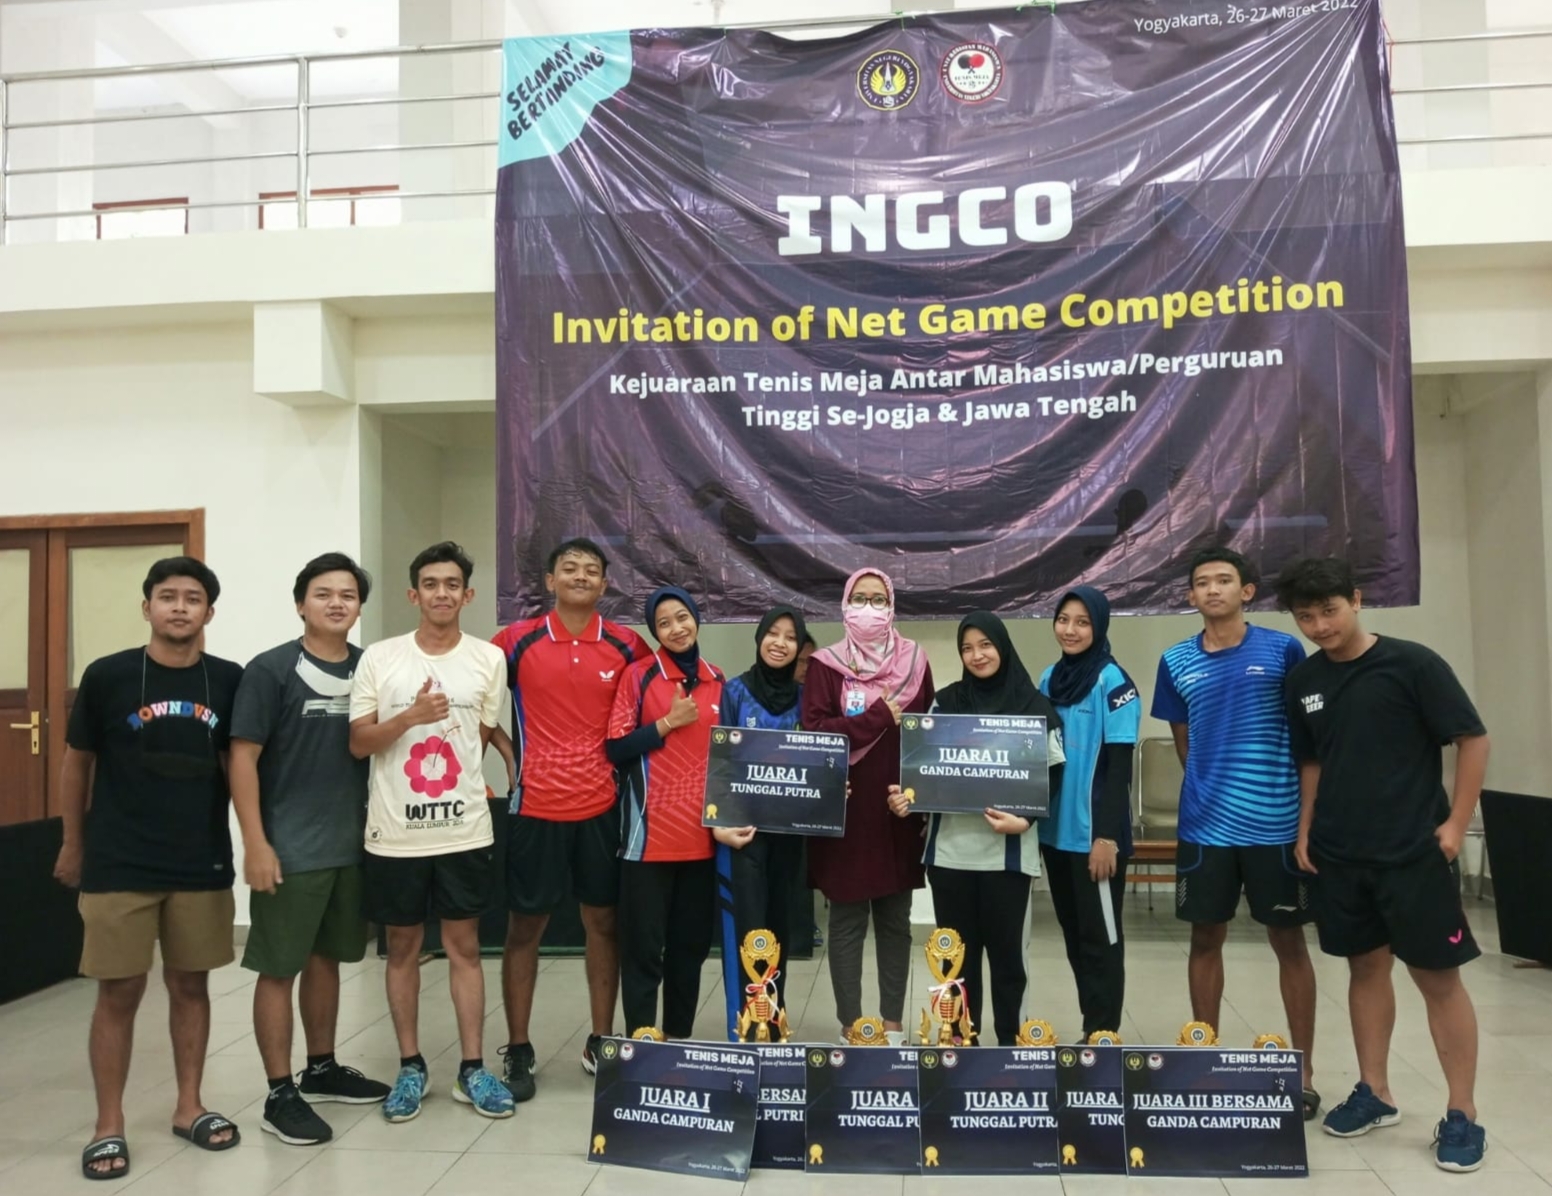 Foto Kejuaraan Undangan Kompetisi Game Net INGCO 2022